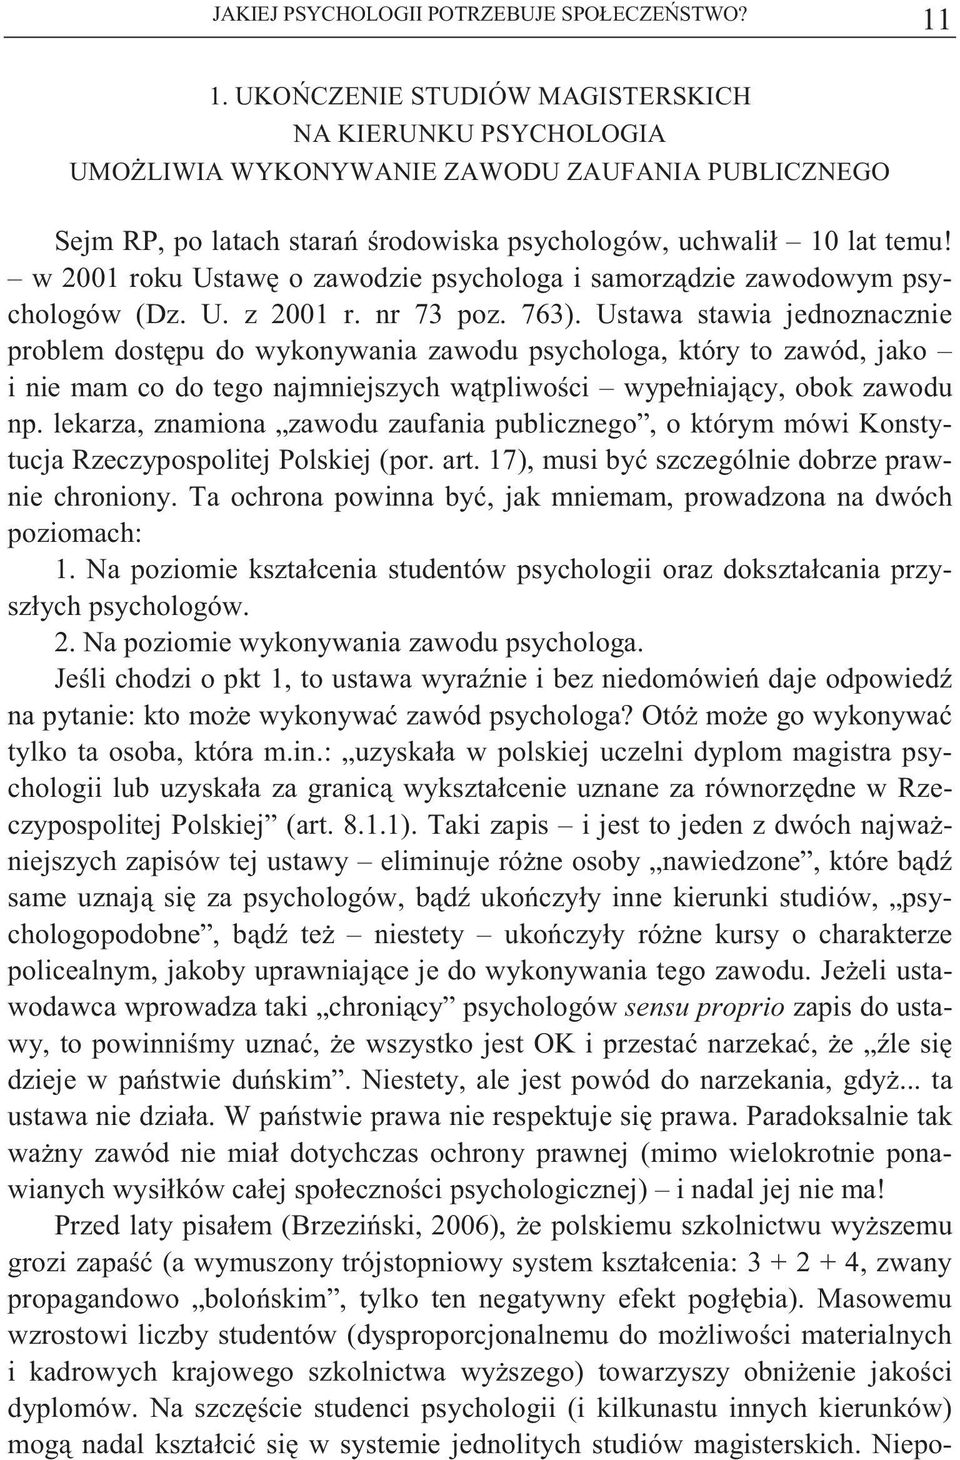 w 2001 roku Ustaw o zawodzie psychologa i samorz dzie zawodowym psychologów (Dz. U. z 2001 r. nr 73 poz. 763).